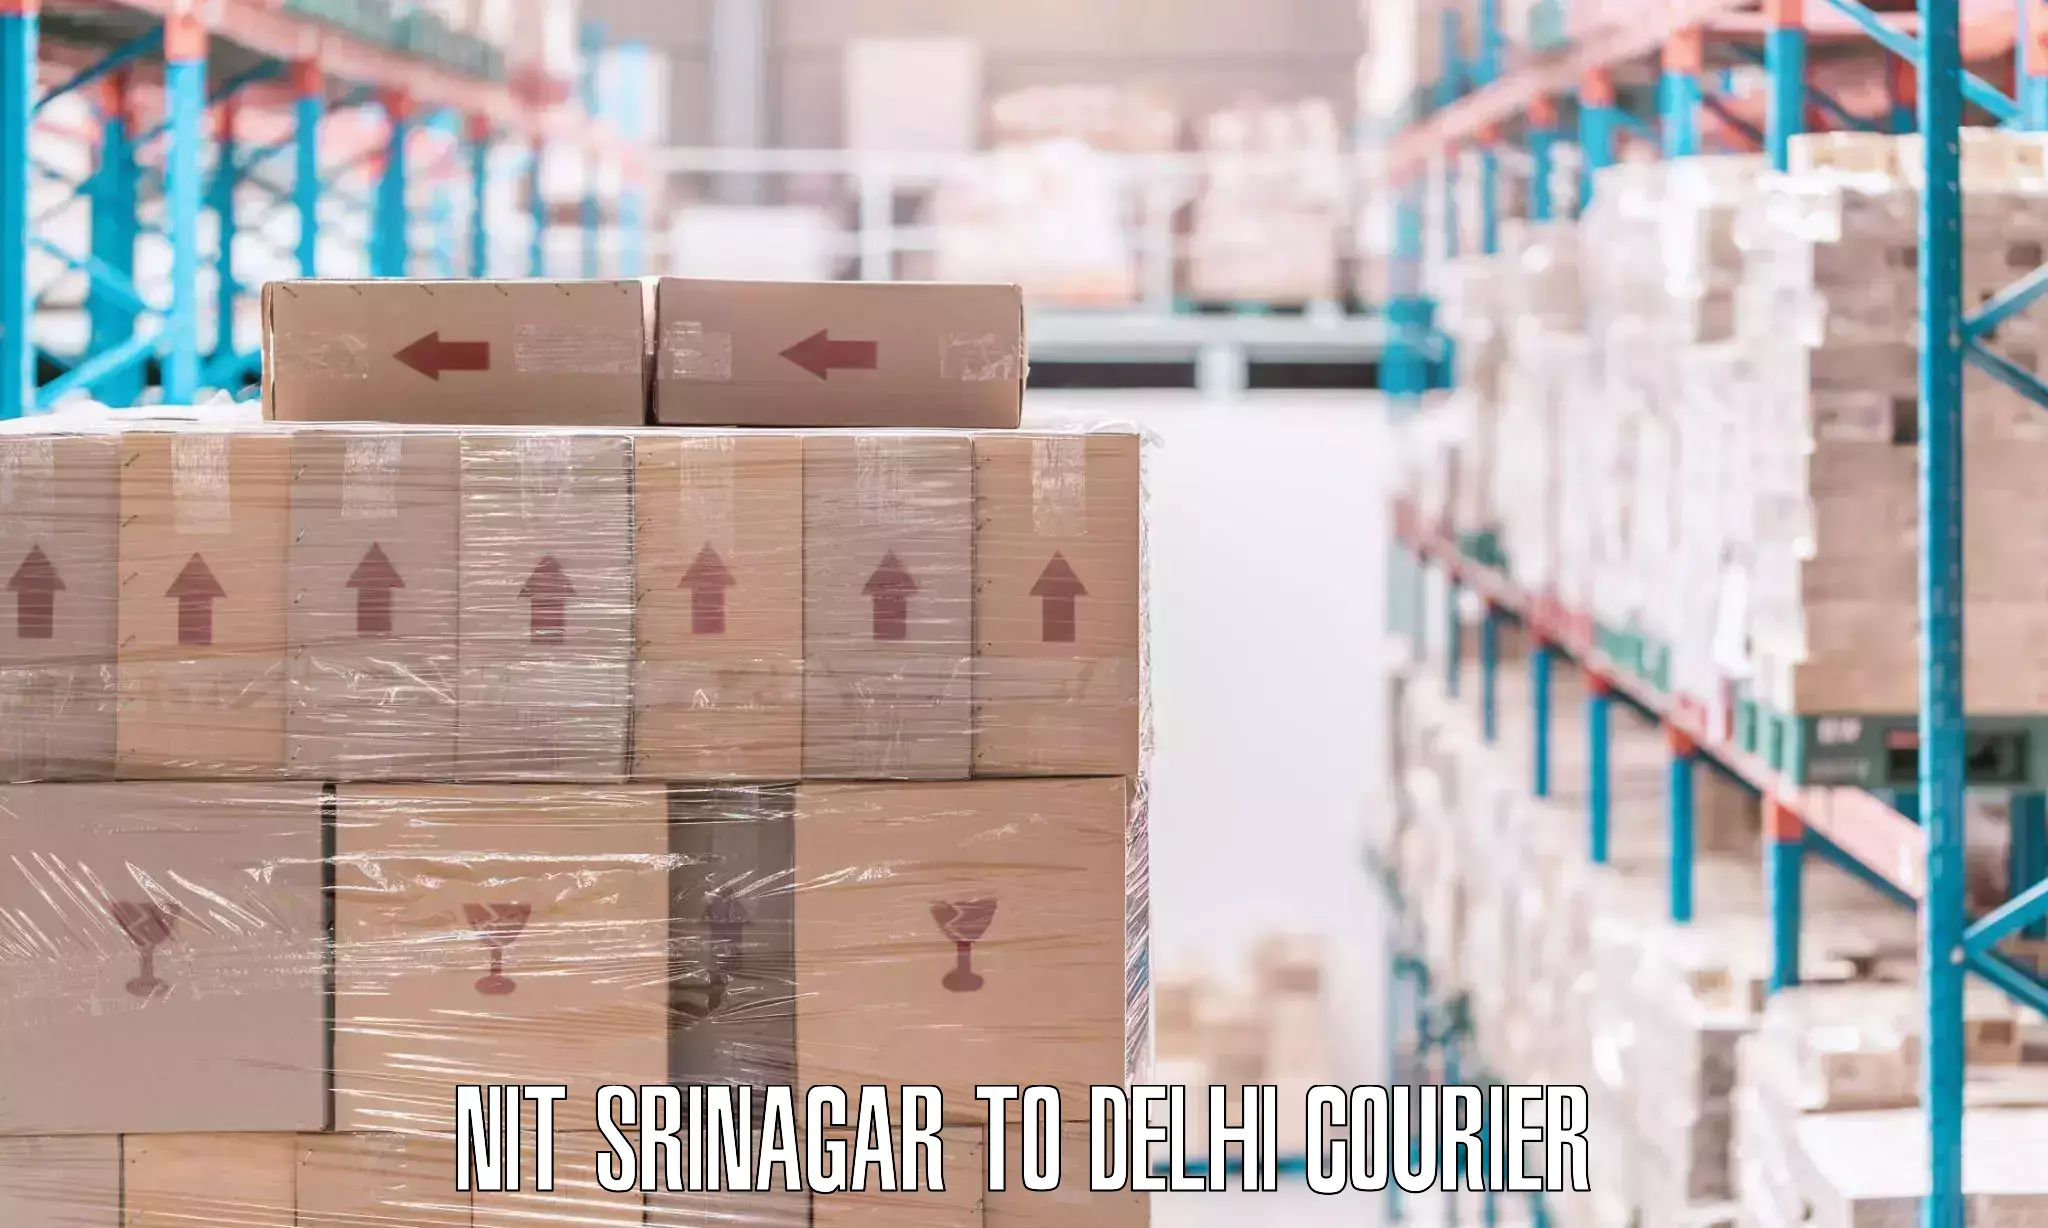 Furniture delivery service NIT Srinagar to Sarojini Nagar